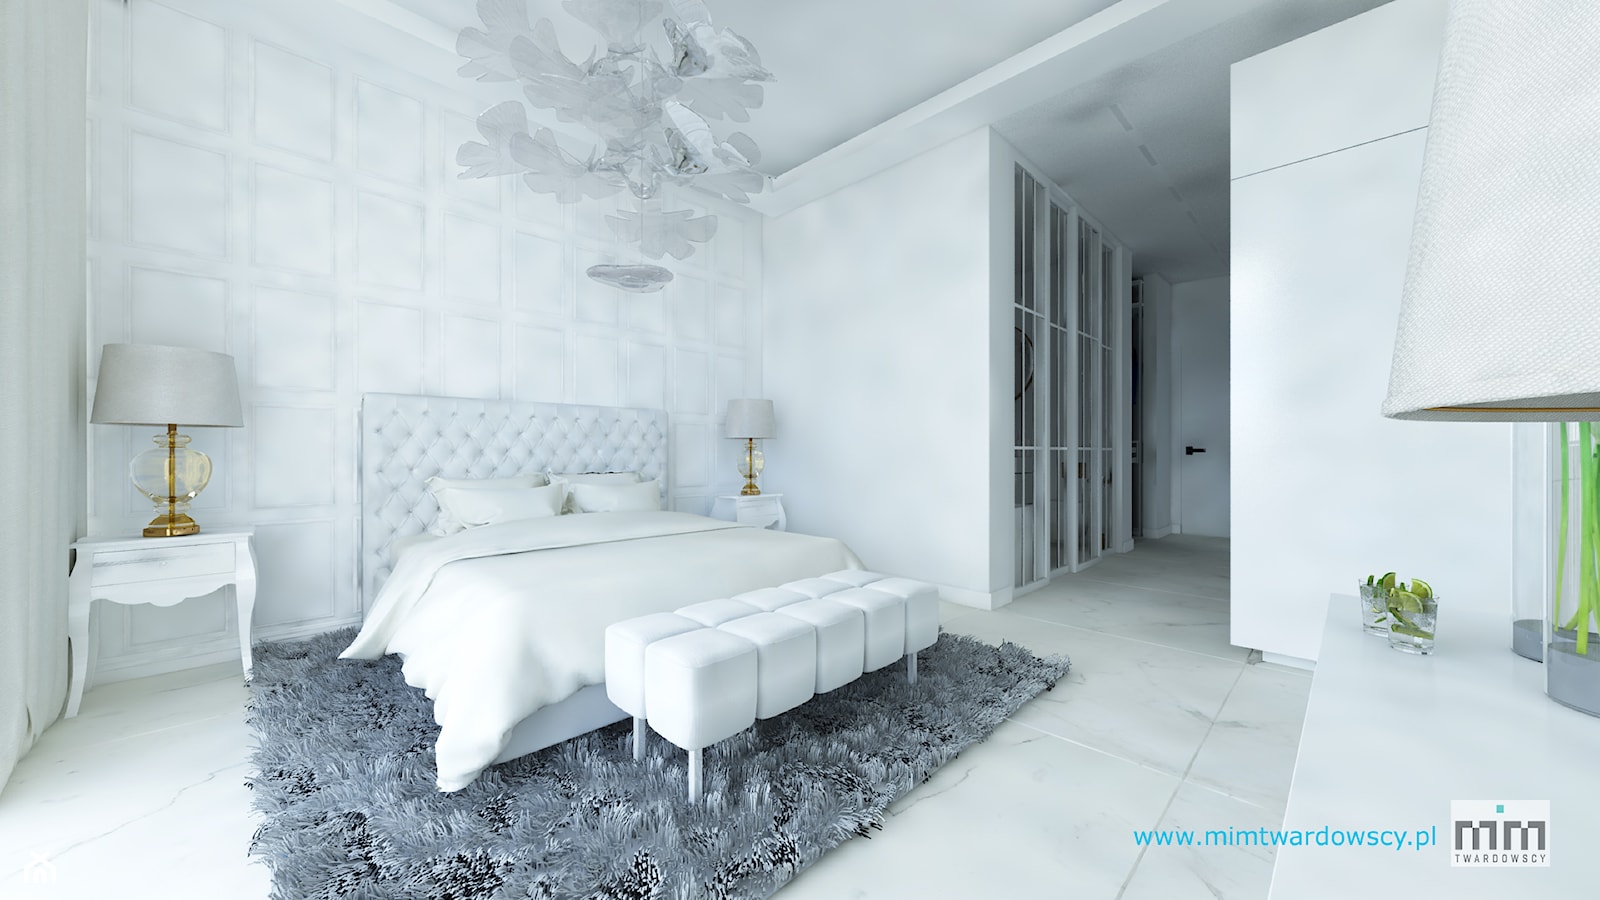 ROOM 01 Pokój hotelowy glamour :) - Duża biała sypialnia, styl glamour - zdjęcie od mimtwardowscy - Homebook